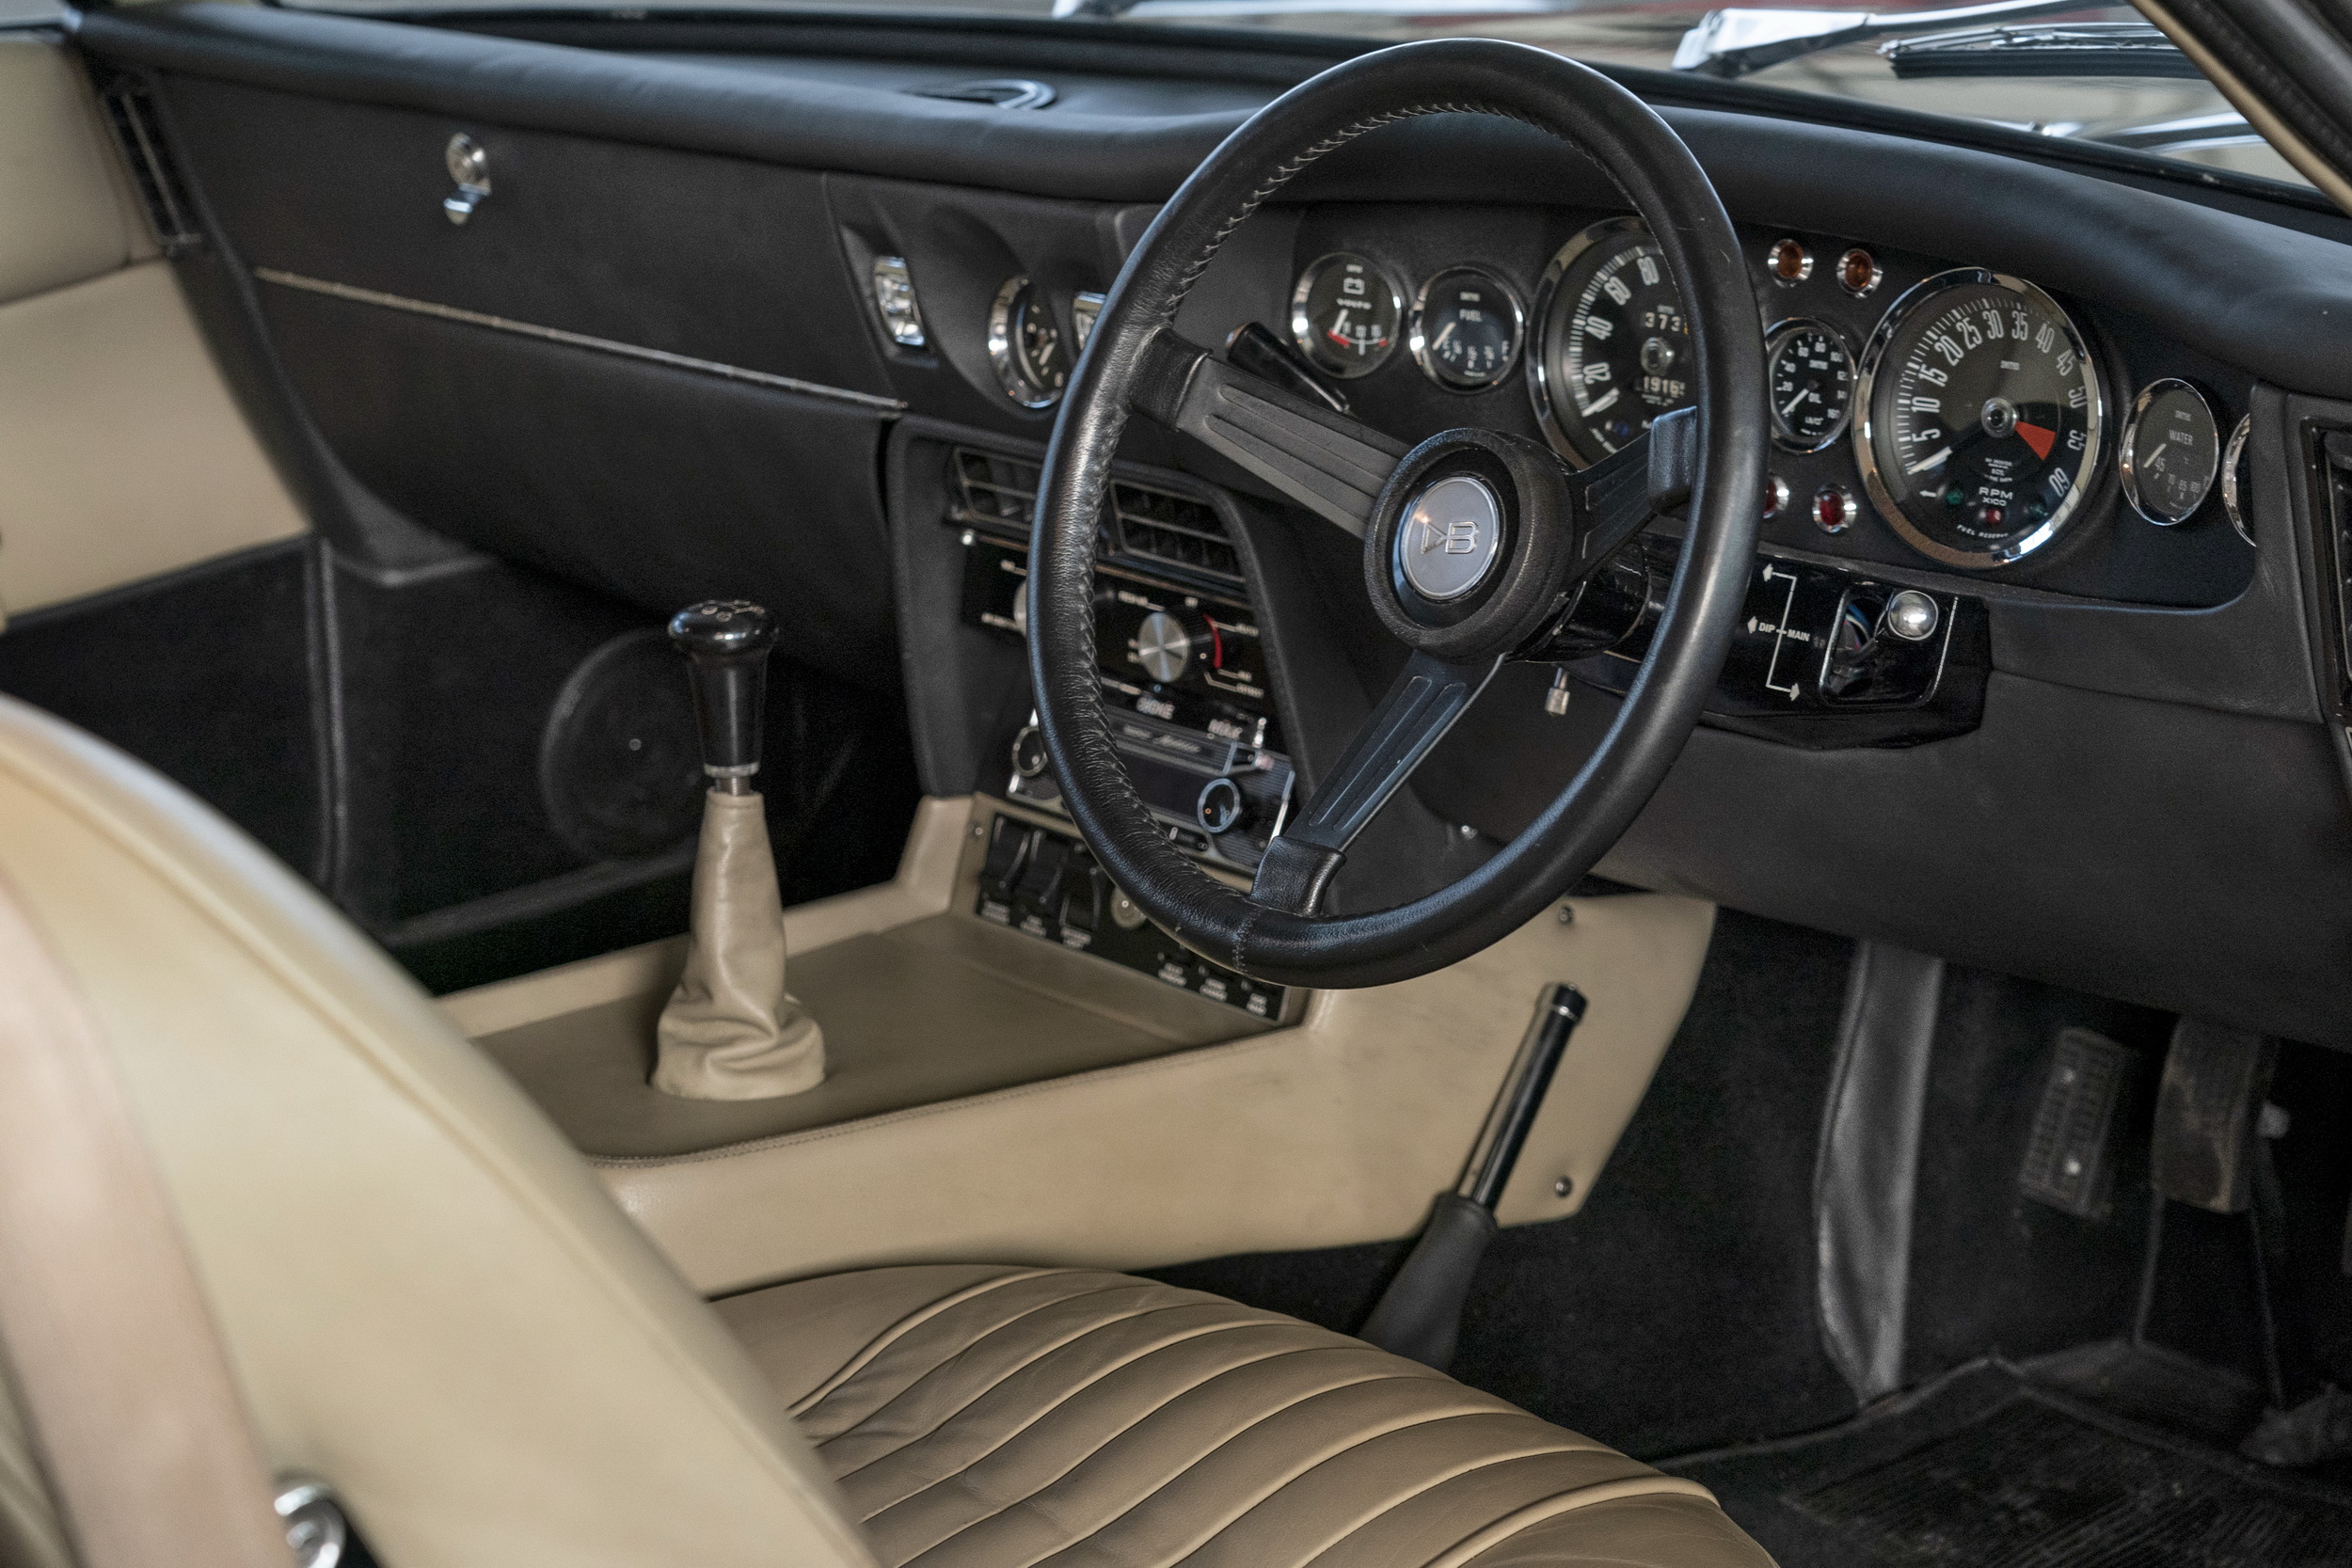 Aston Martin DBS Vantage 1967-1972